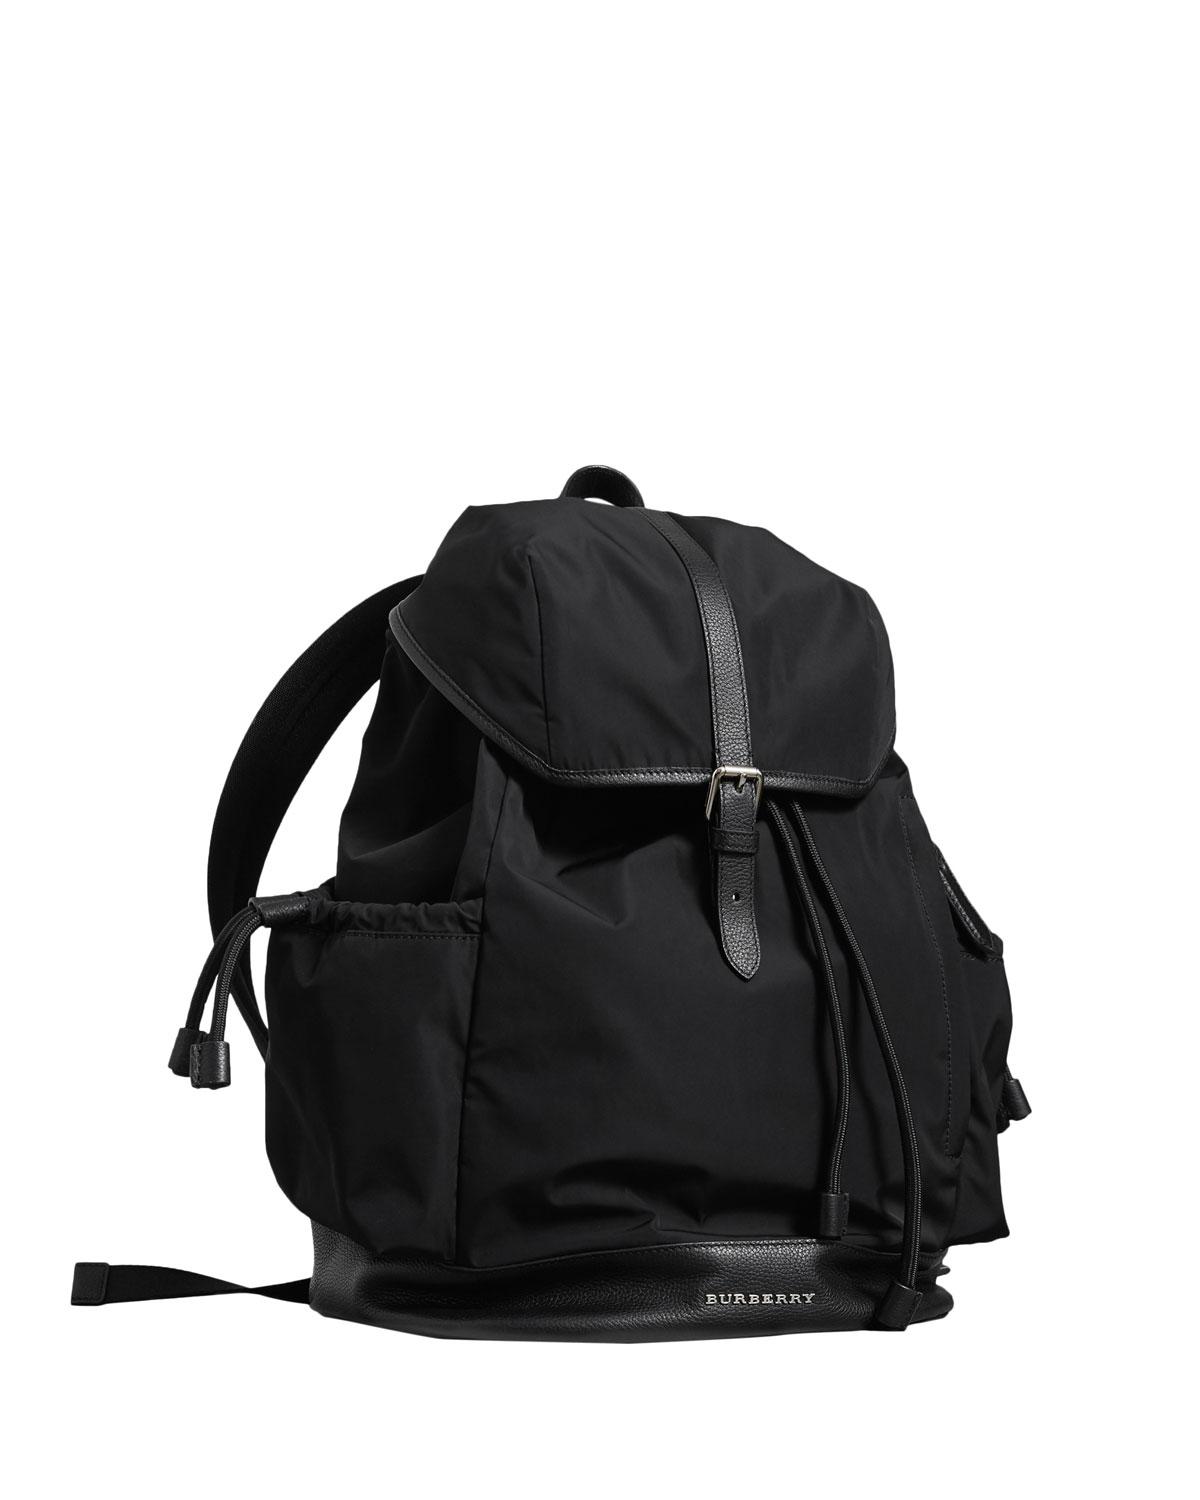 burberry watson backpack